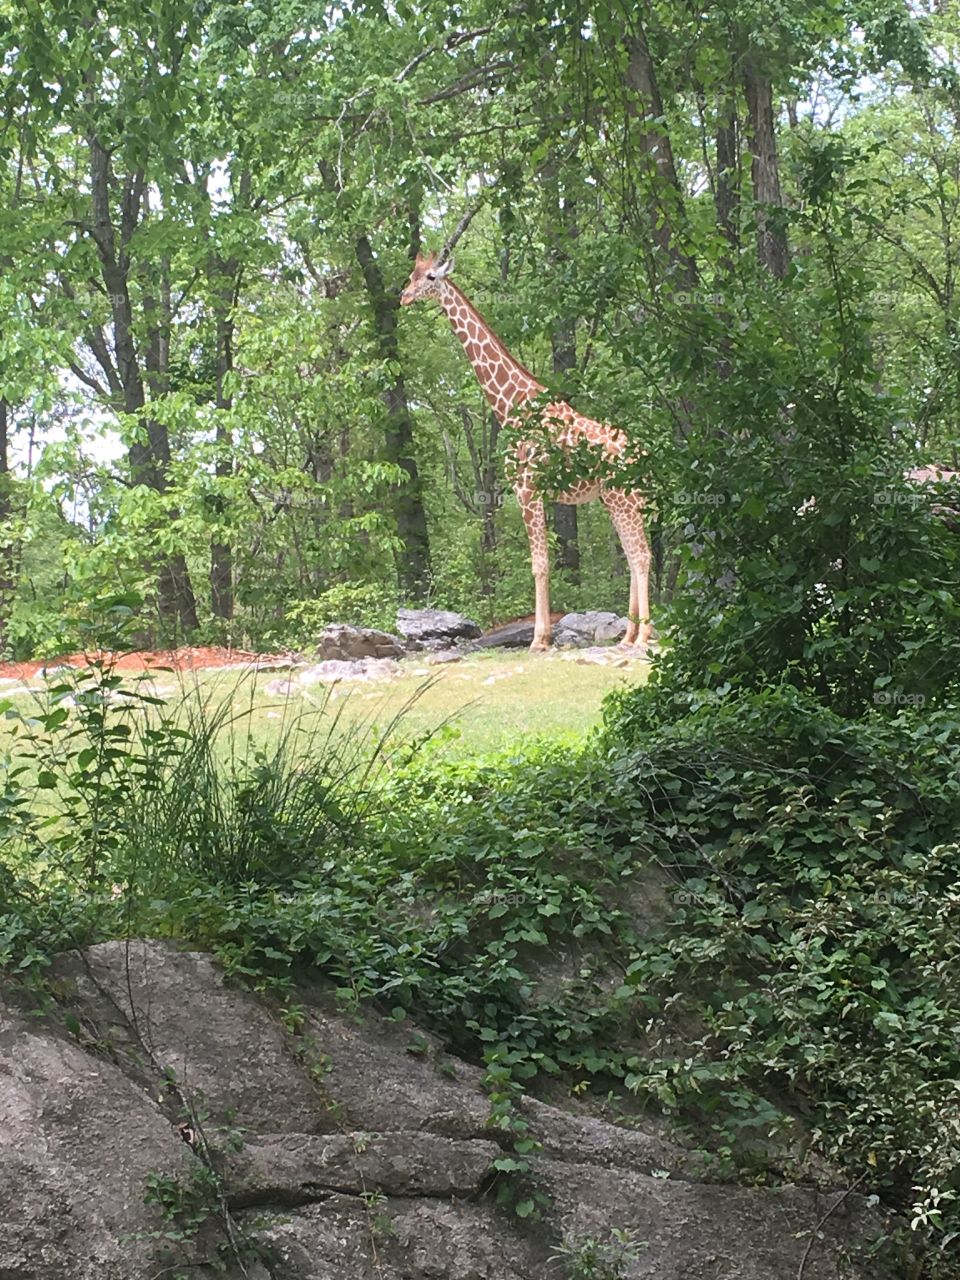 Giraffe at the NC Zoo. 